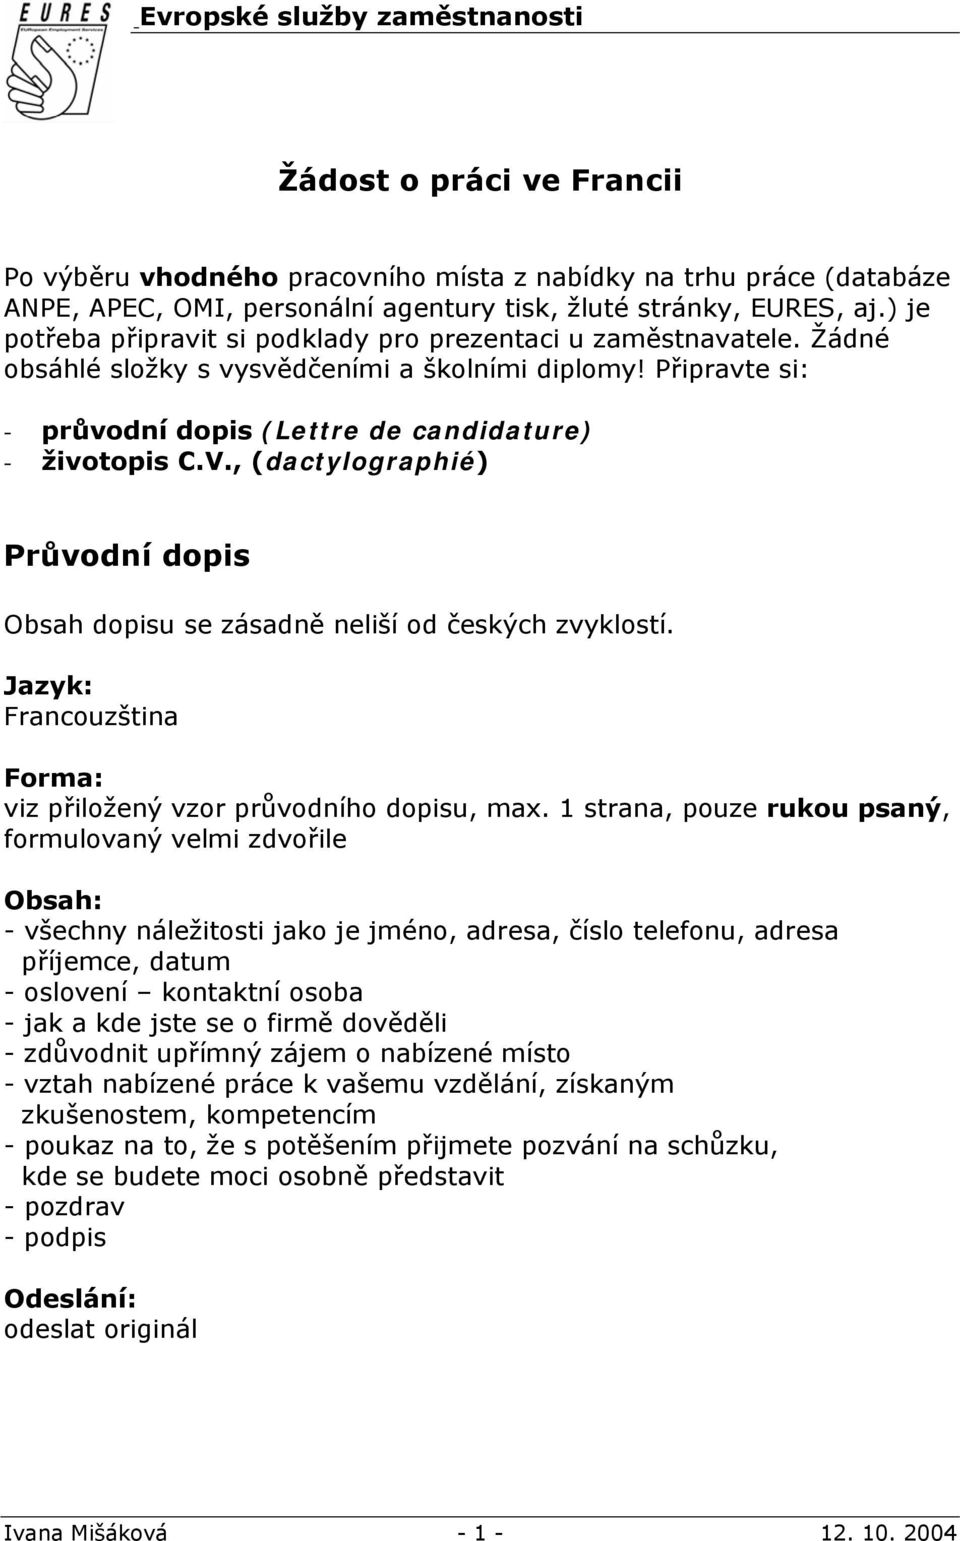 Žádost o práci ve Francii - PDF Free Download